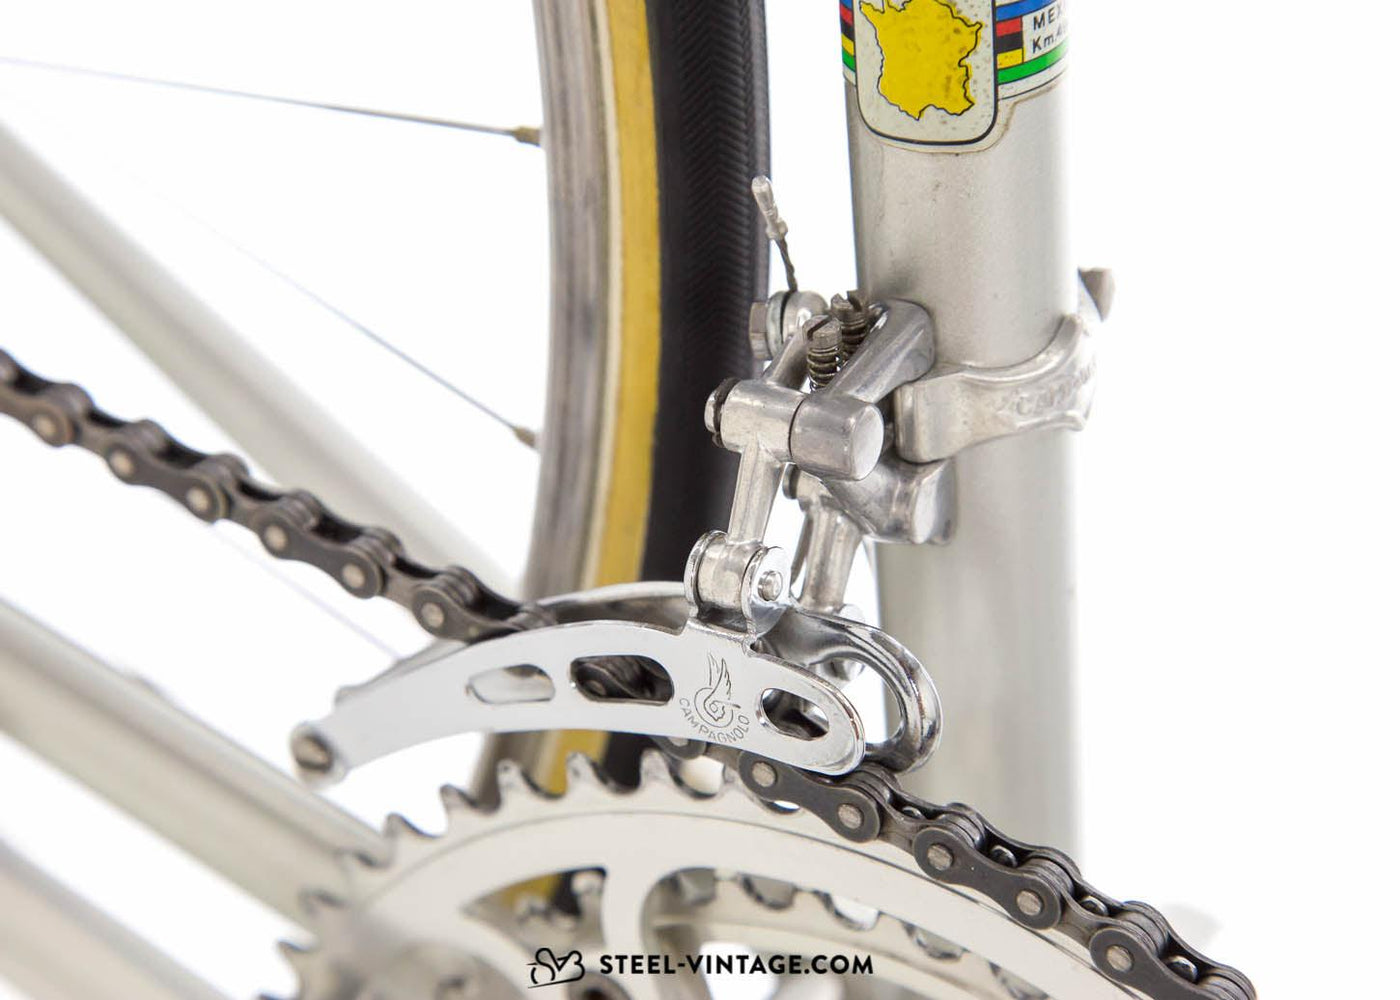 Eddy Merckx Professional 531 Vintage Racing Bike 1981 - Steel Vintage Bikes